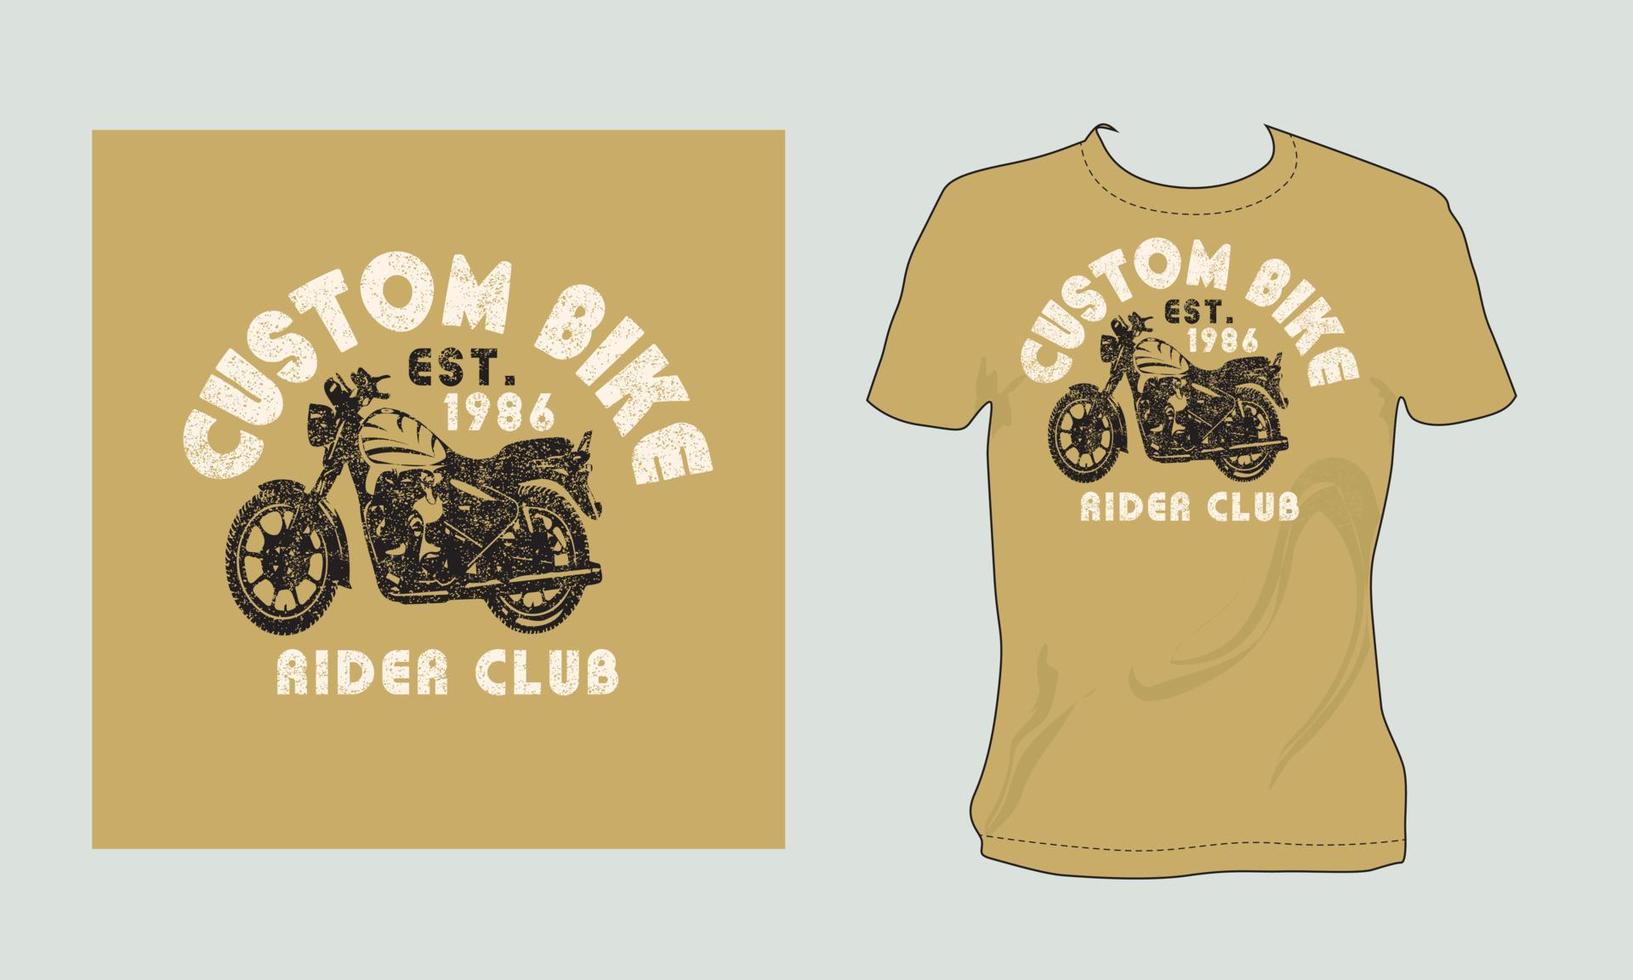 beställnings- cykel ryttare klubb uppskattningsvis 1986 årgång brocken vektor konst svart och vit Färg t skjorta design